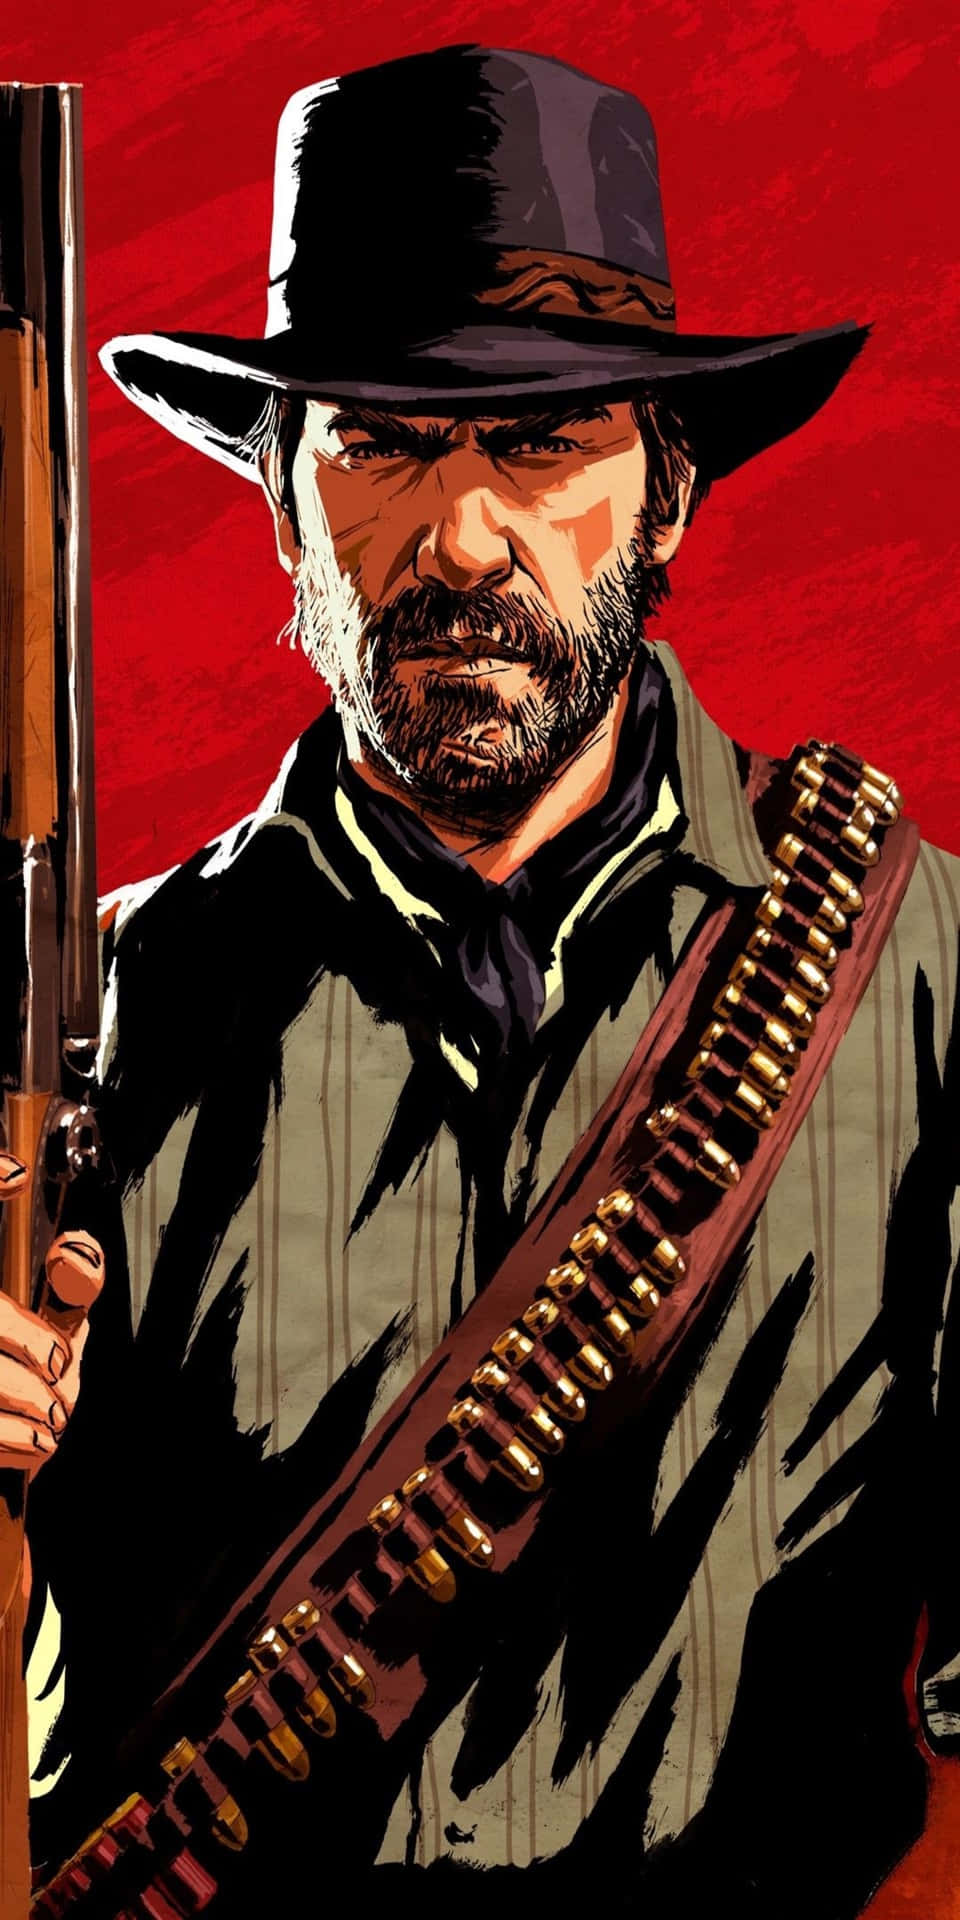 Pixel3 Red Dead Redemption 2 Bakgrundsbild Med Arthur Morgan Och Hagelgevär.